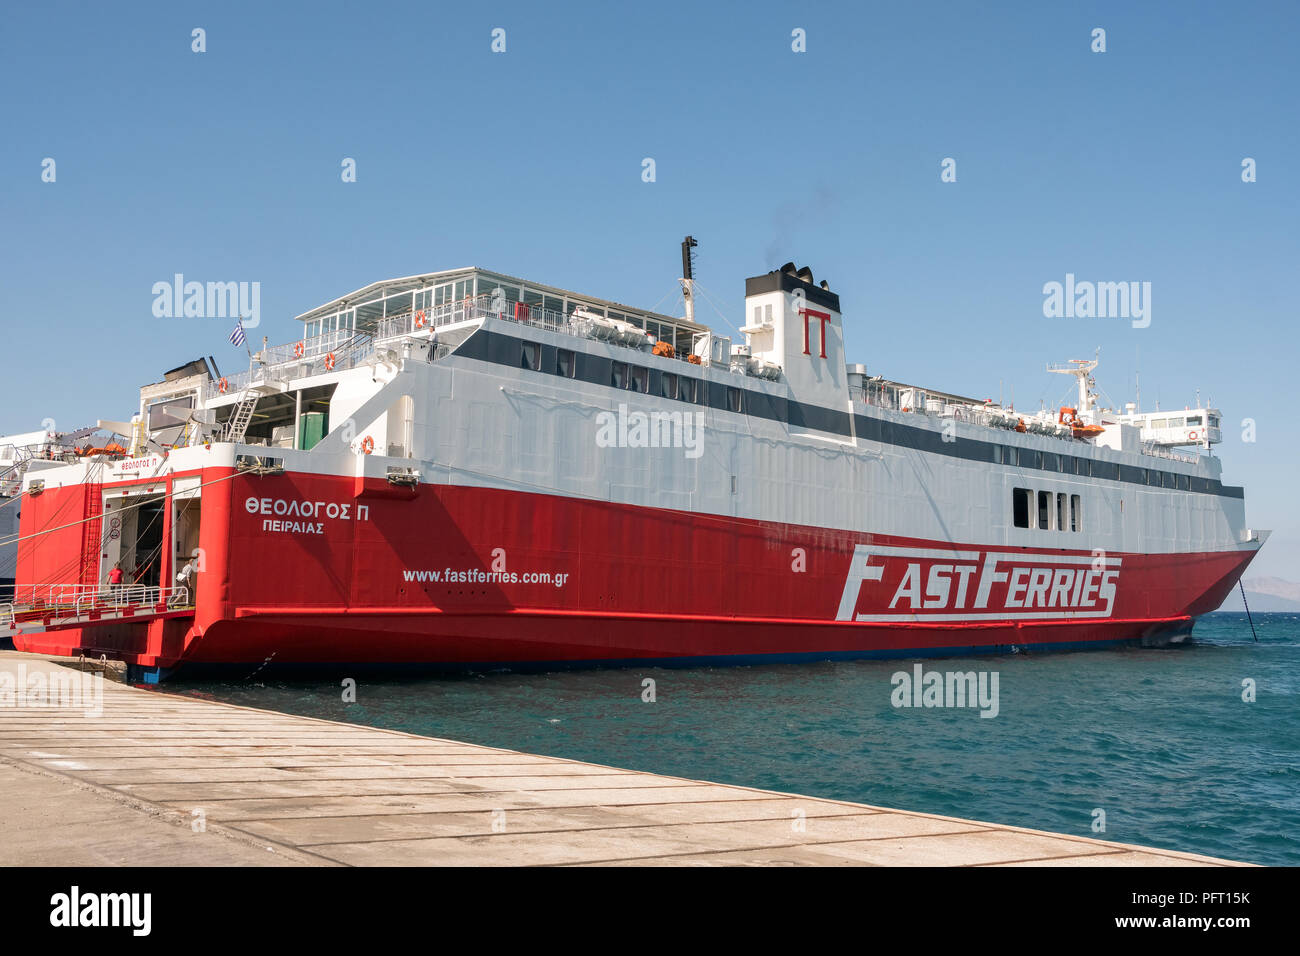 Rafina, Griechenland - 15. Mai 2018: FastFerries Firma Yacht in den Hafen von Rafina anreisen. FastFerries Unternehmen ist einer der größten griechischen Versand compa Stockfoto